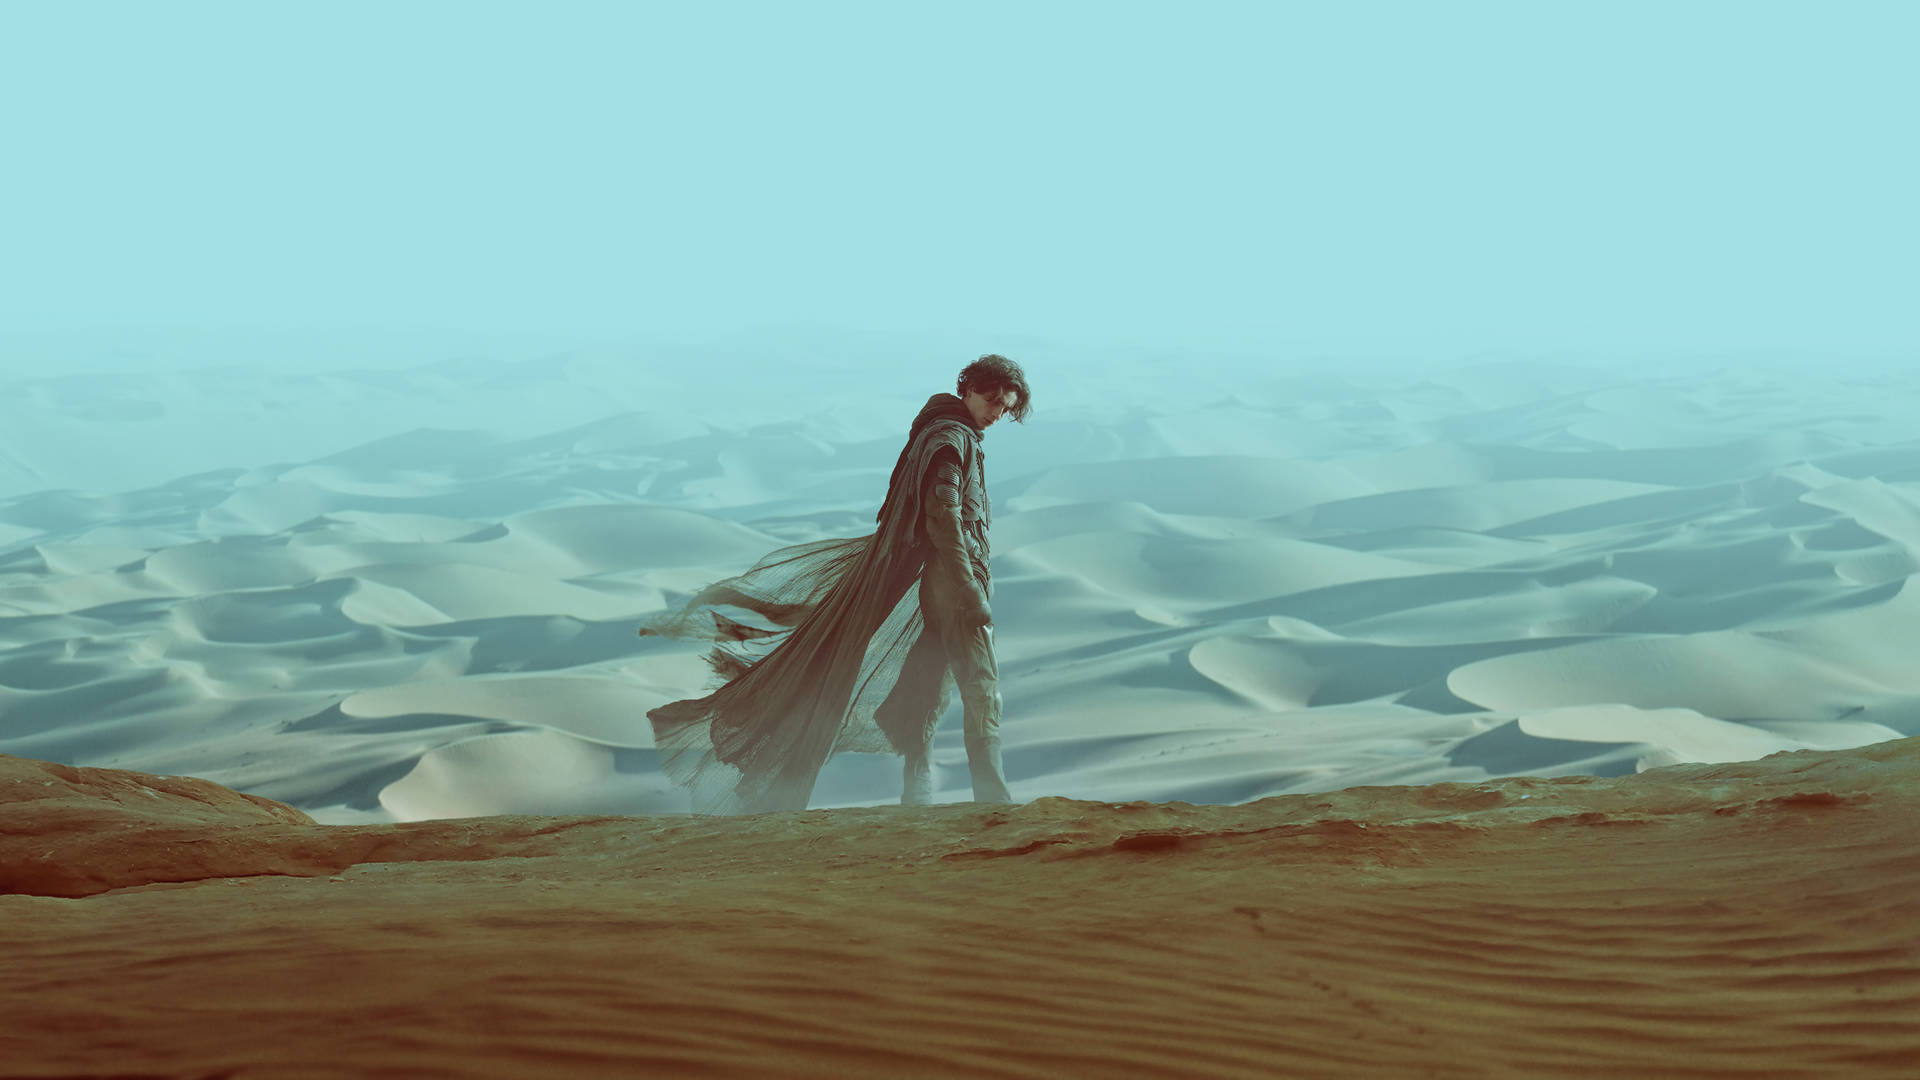 Paul Atreides From Dune 2021 Wallpaper